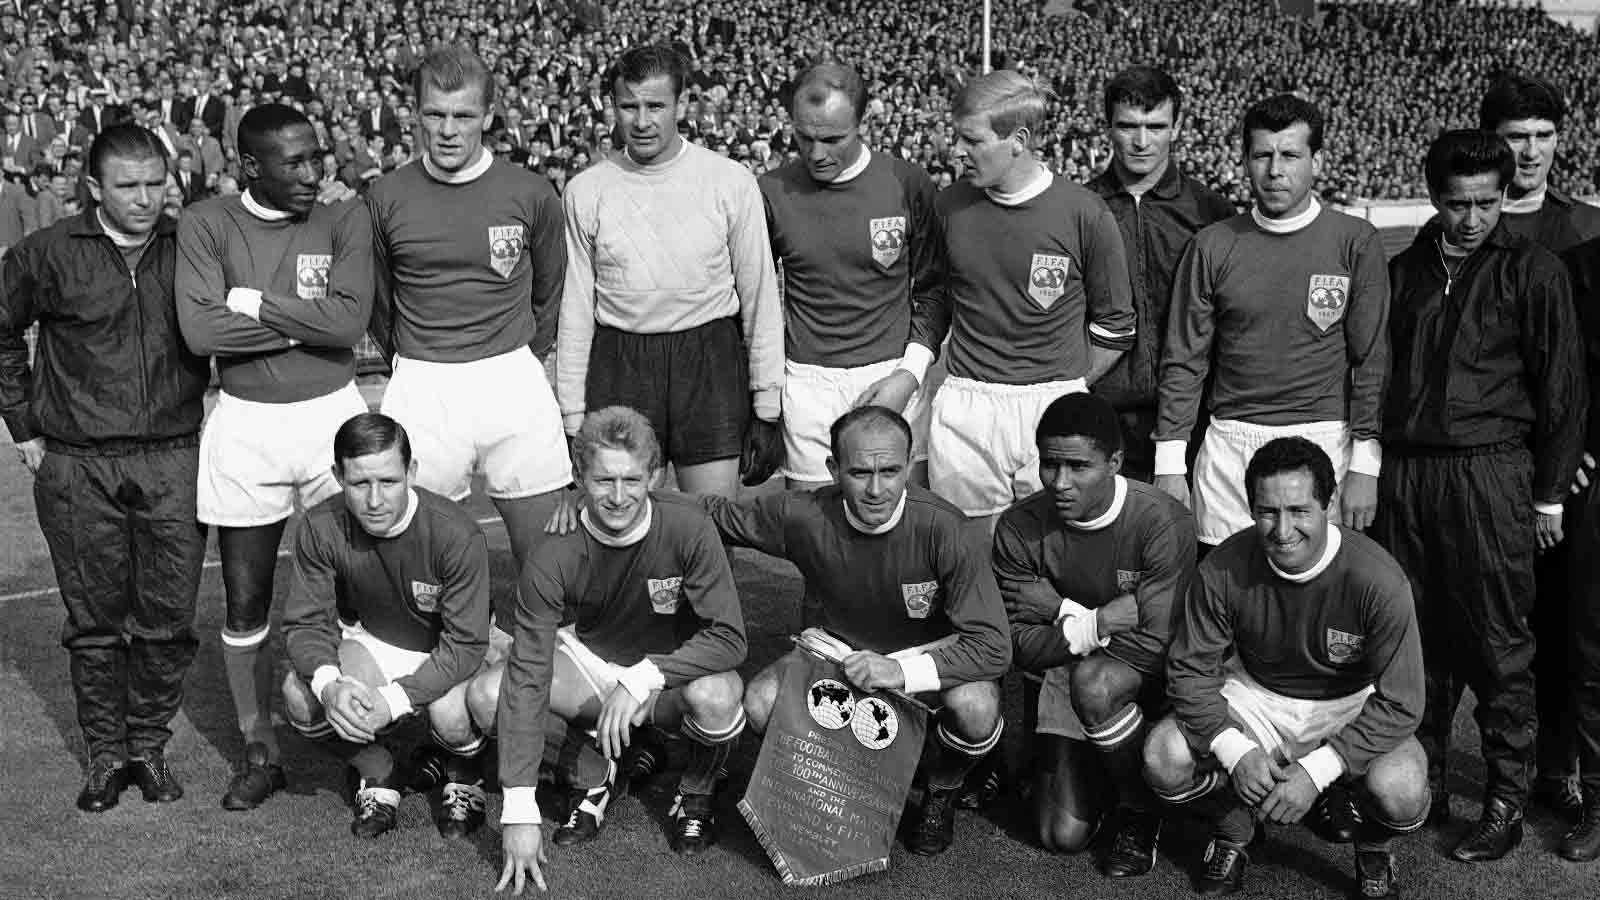 שחקני נבחרת &quot;שאר העולם&quot; במשחק מול נבחרת אנגליה ב-23 באוקטובר 1963. לב יאשין בחולצה הלבנה בשורה האחורית (AP Photo/Bippa)